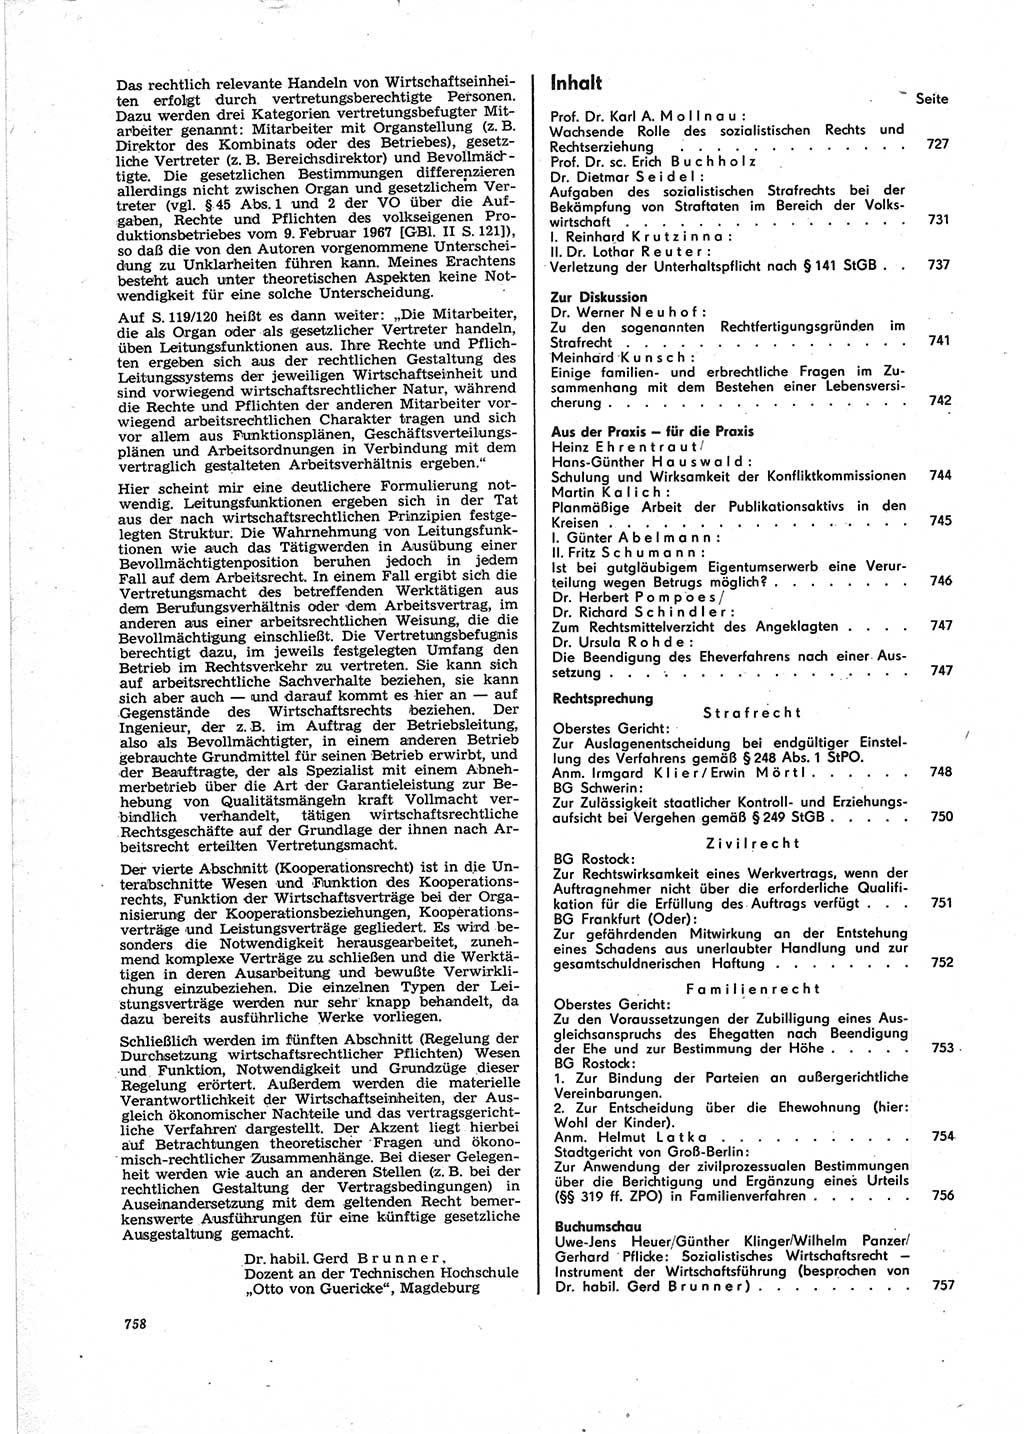 Neue Justiz (NJ), Zeitschrift für Recht und Rechtswissenschaft [Deutsche Demokratische Republik (DDR)], 25. Jahrgang 1971, Seite 758 (NJ DDR 1971, S. 758)